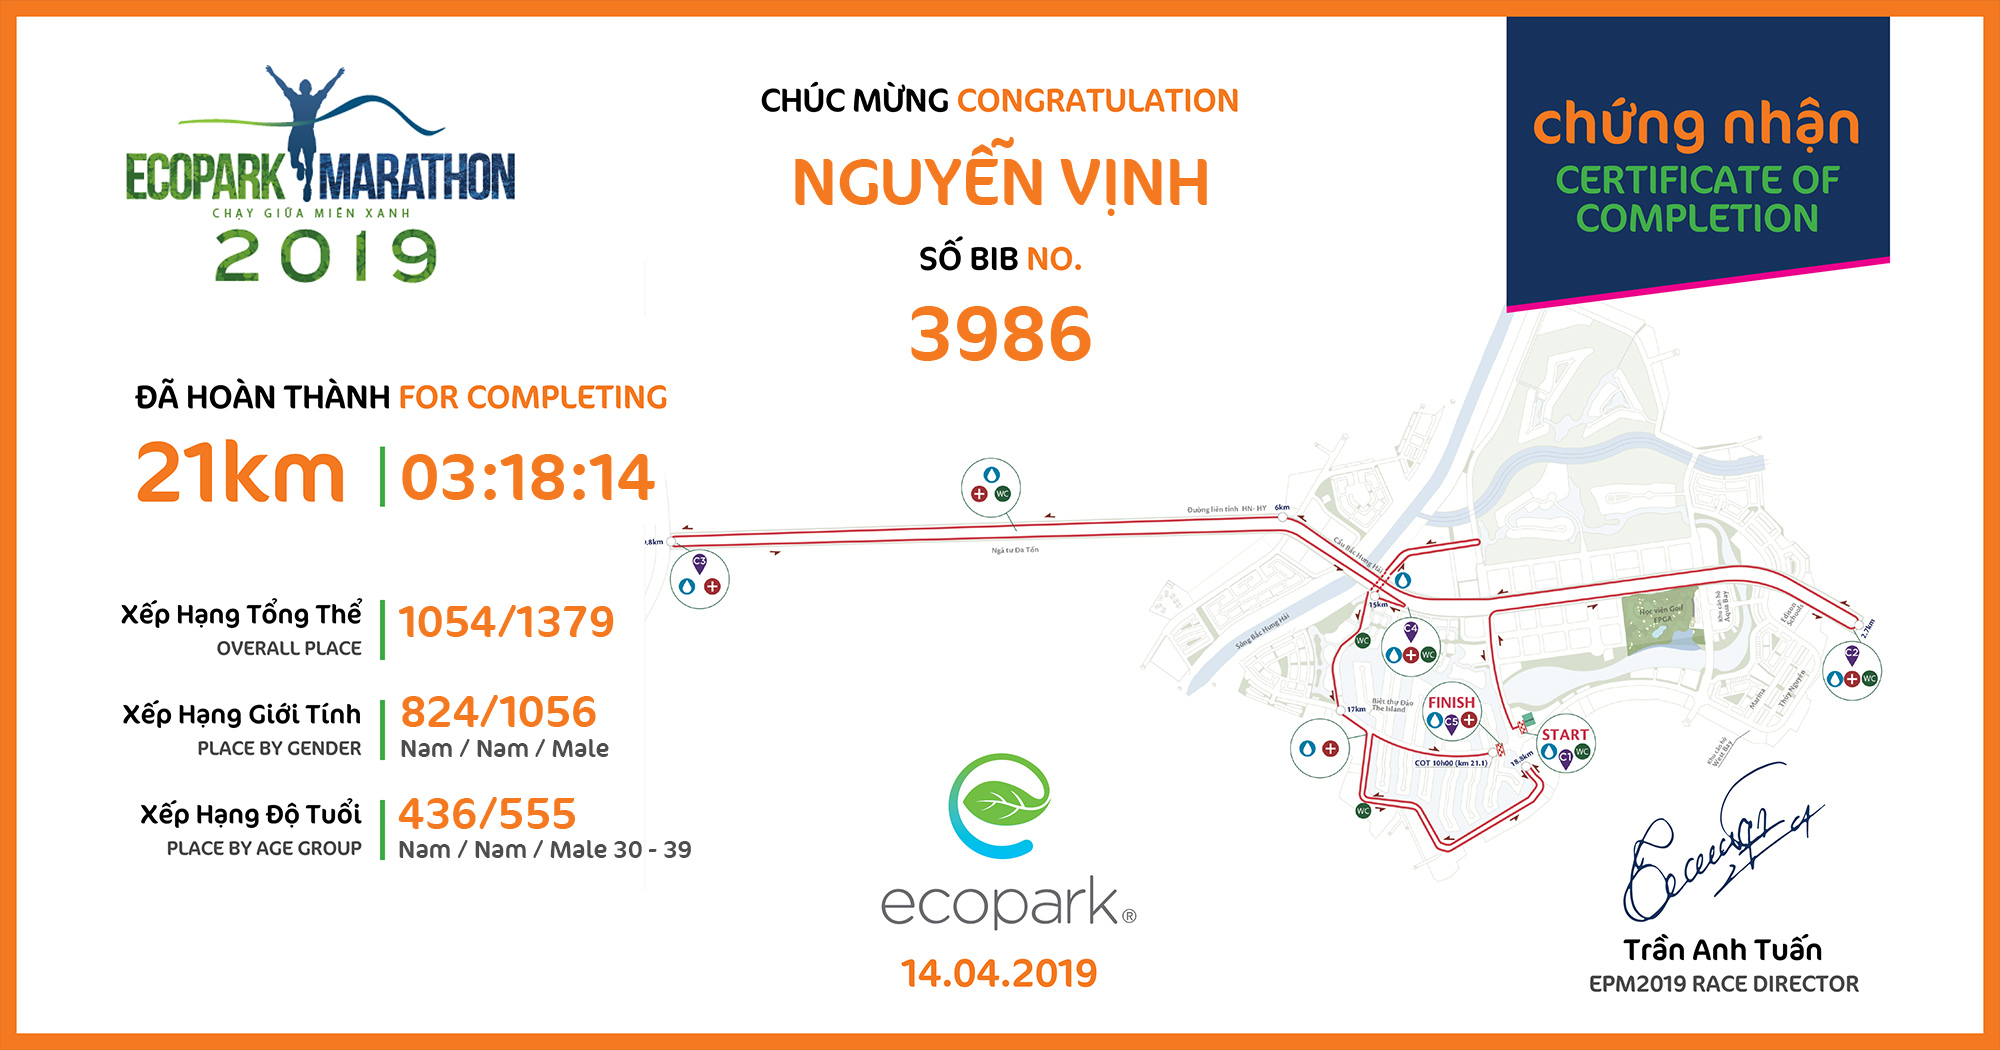 3986 - Nguyễn Vịnh